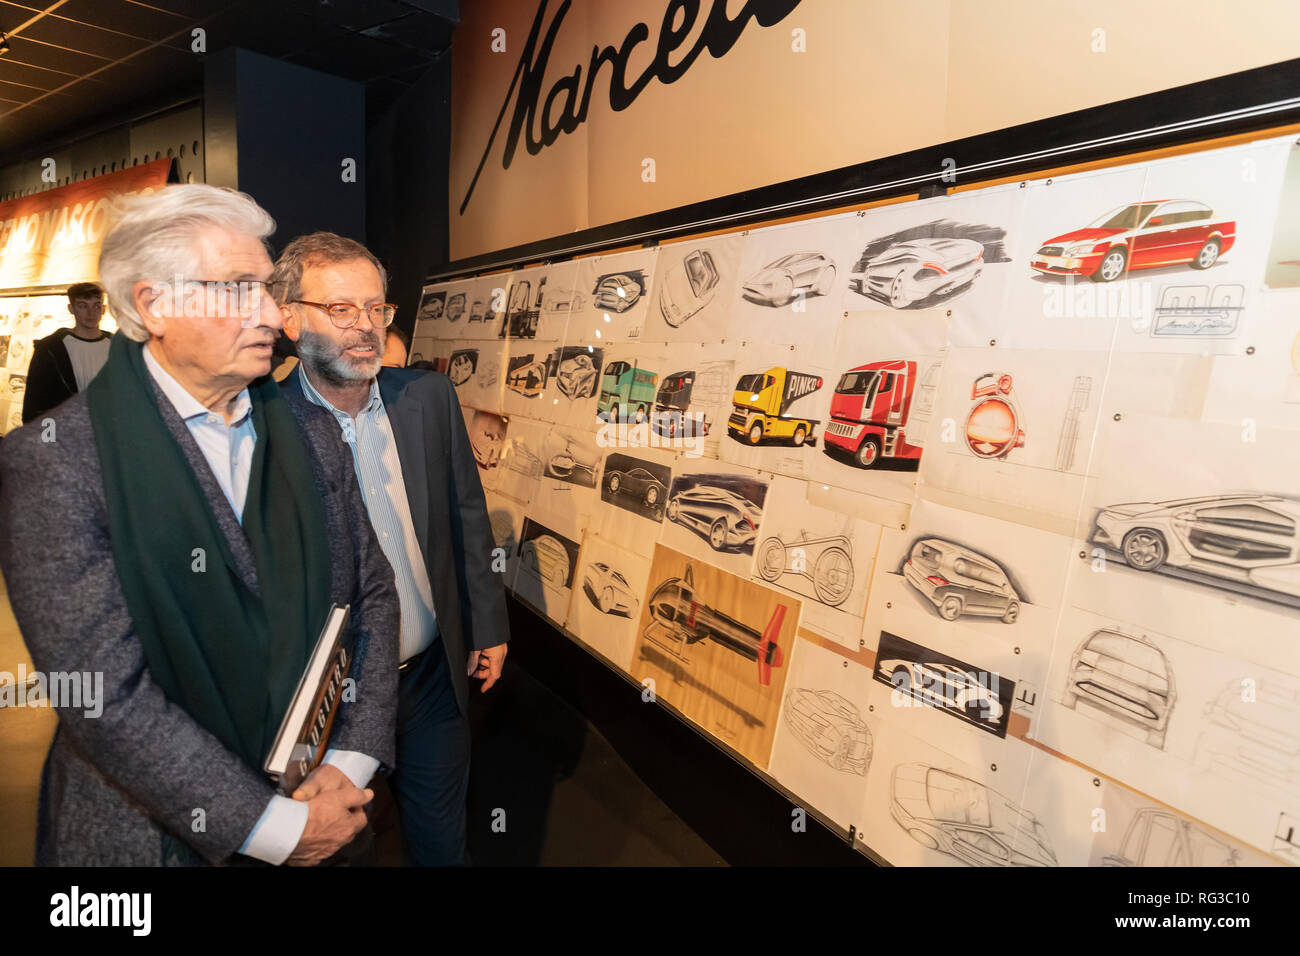 Ausstellung im National Car Museum, MAUTO widmet sich der Auto designer Marcello Gandini "Der versteckte Genius'. Herr Giugiaro Besuch der Ausstellung Stockfoto